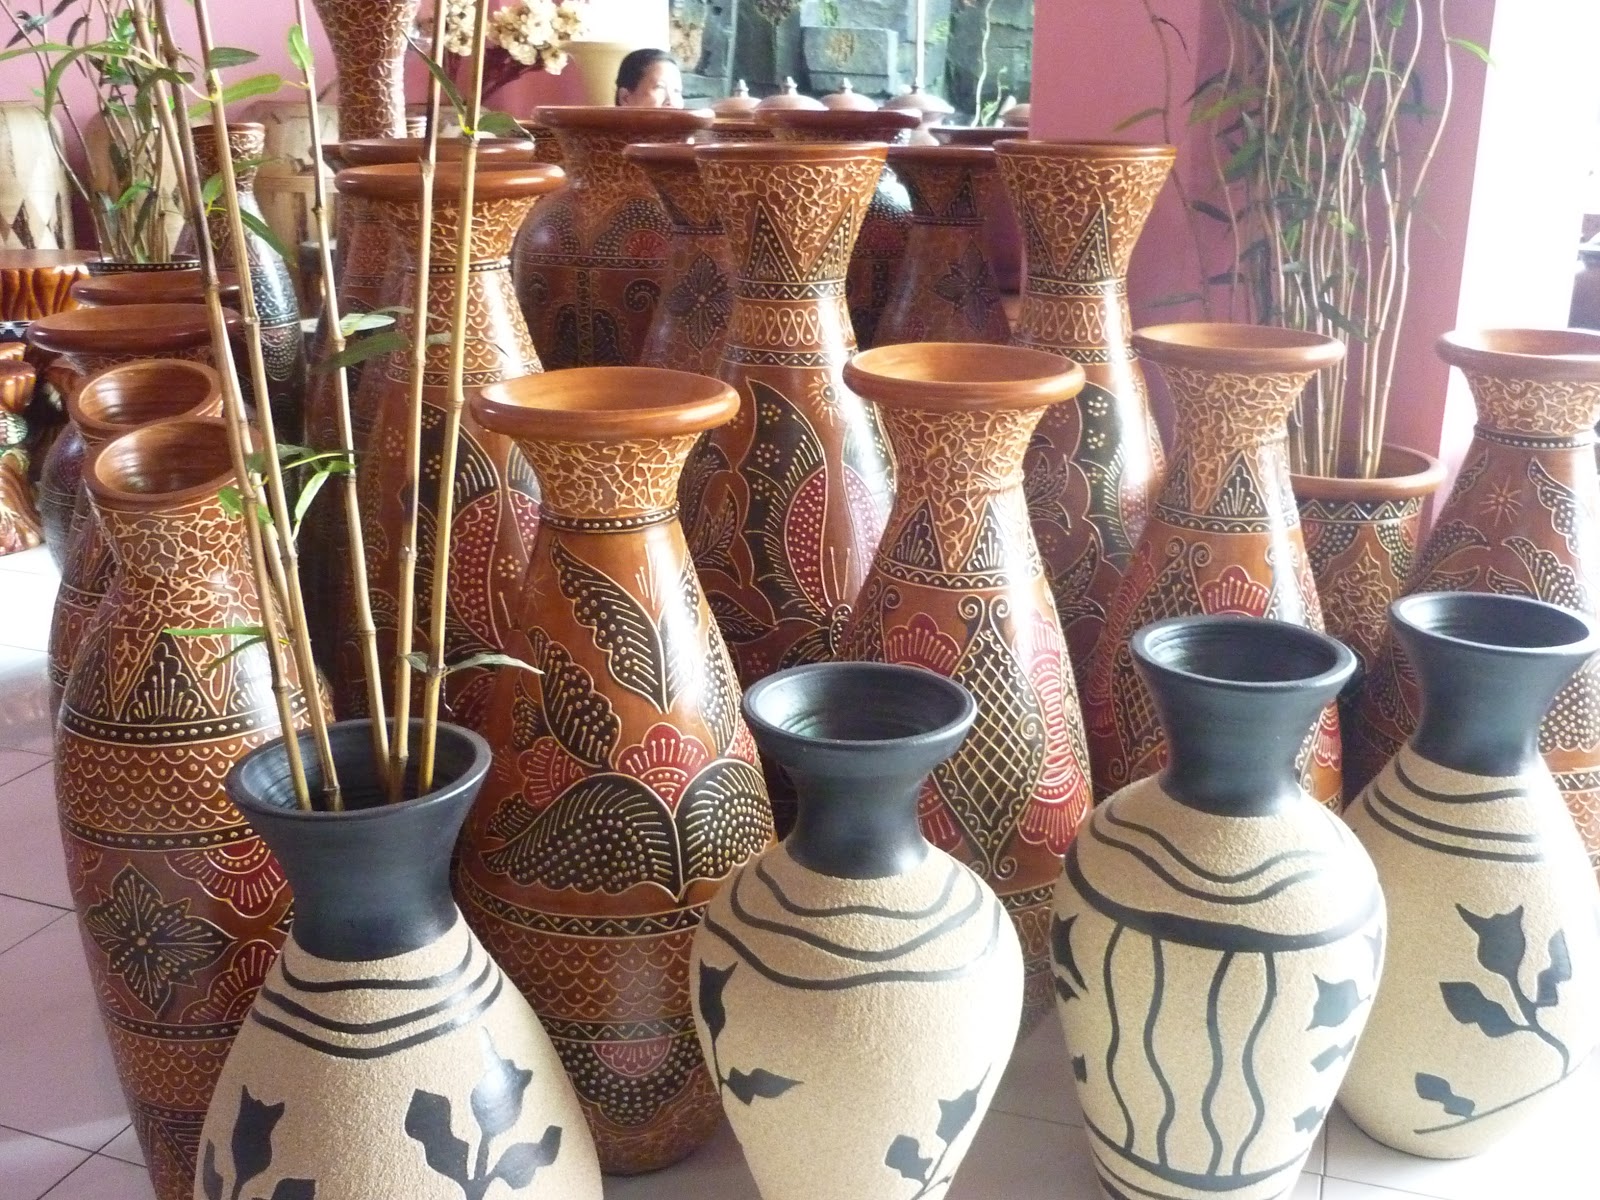 ilmu pengetahuan: Sentra Kerajinan Keramik di Indonesia